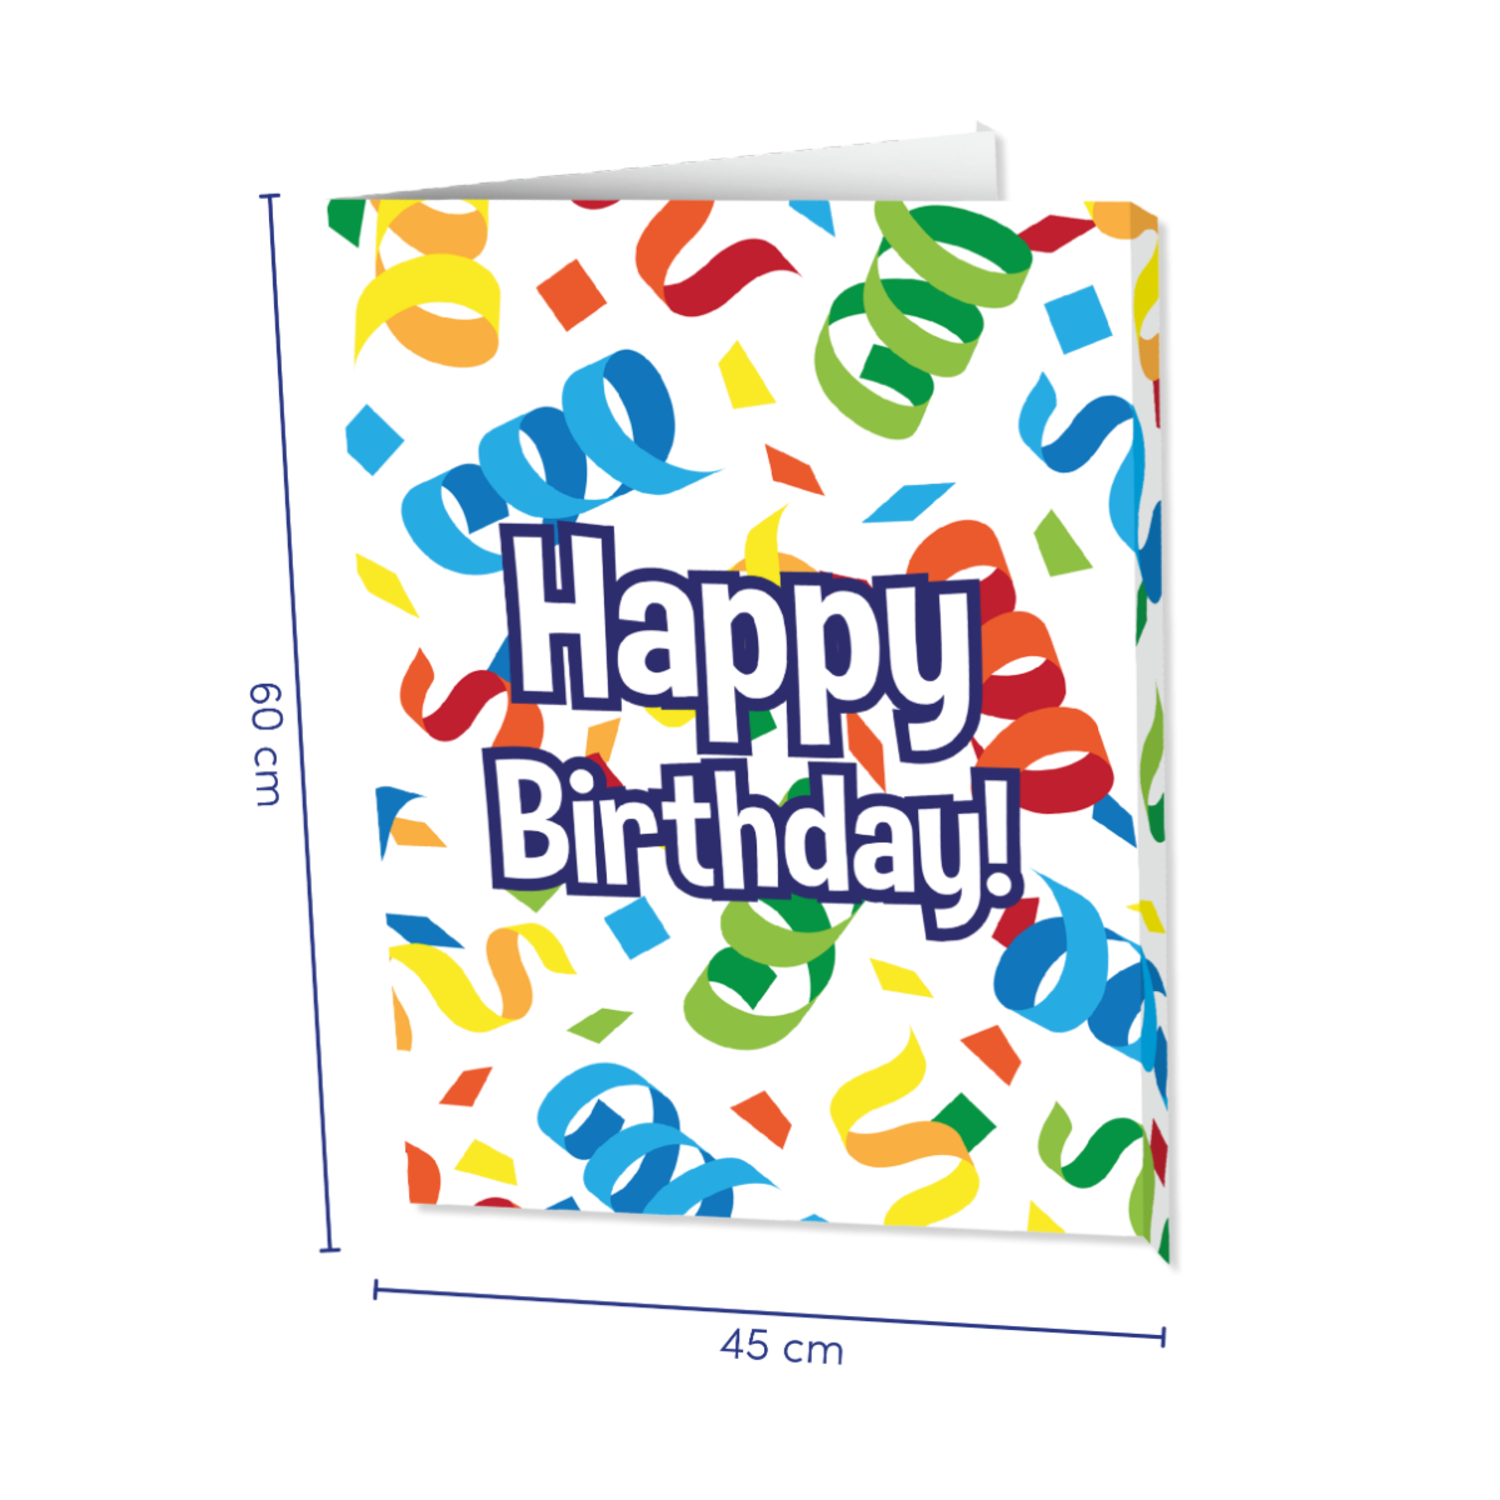 Cartel de feliz cumpleaños 50 con arco de guirnalda de globos de confeti,  juego de globos de oro rosa 50 para mujer, póster rosa de cumpleaños de 50